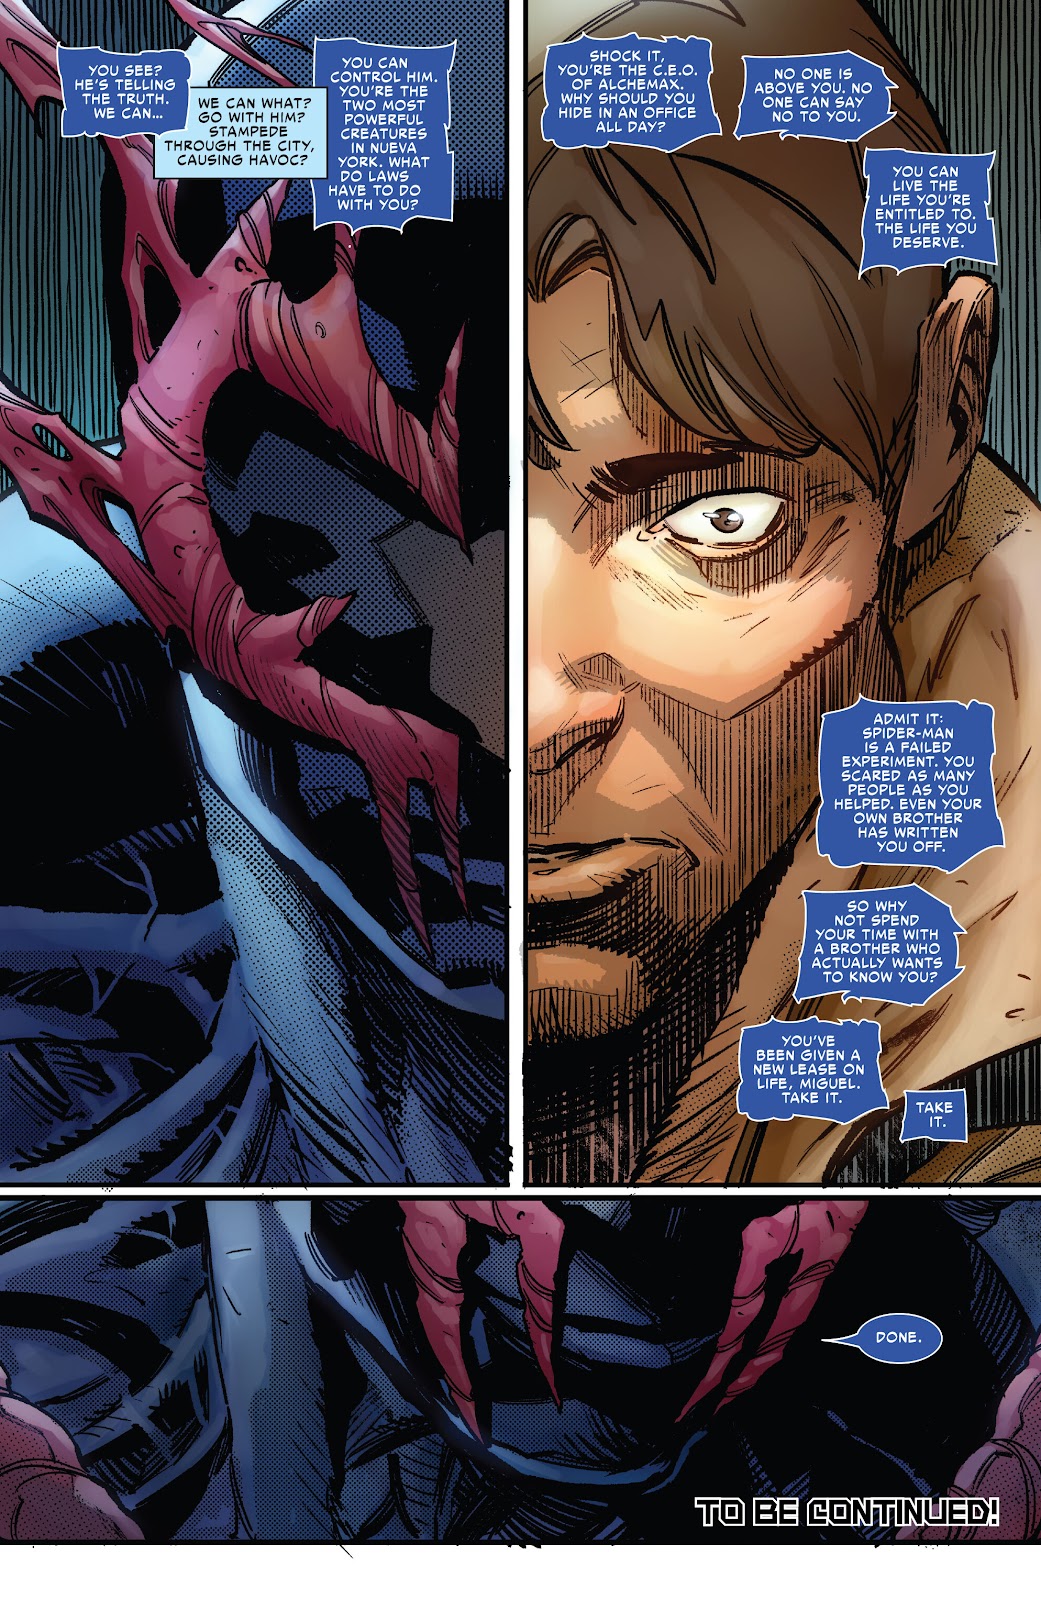 Symbiote Spider-Man 2099 issue 2 - Page 24